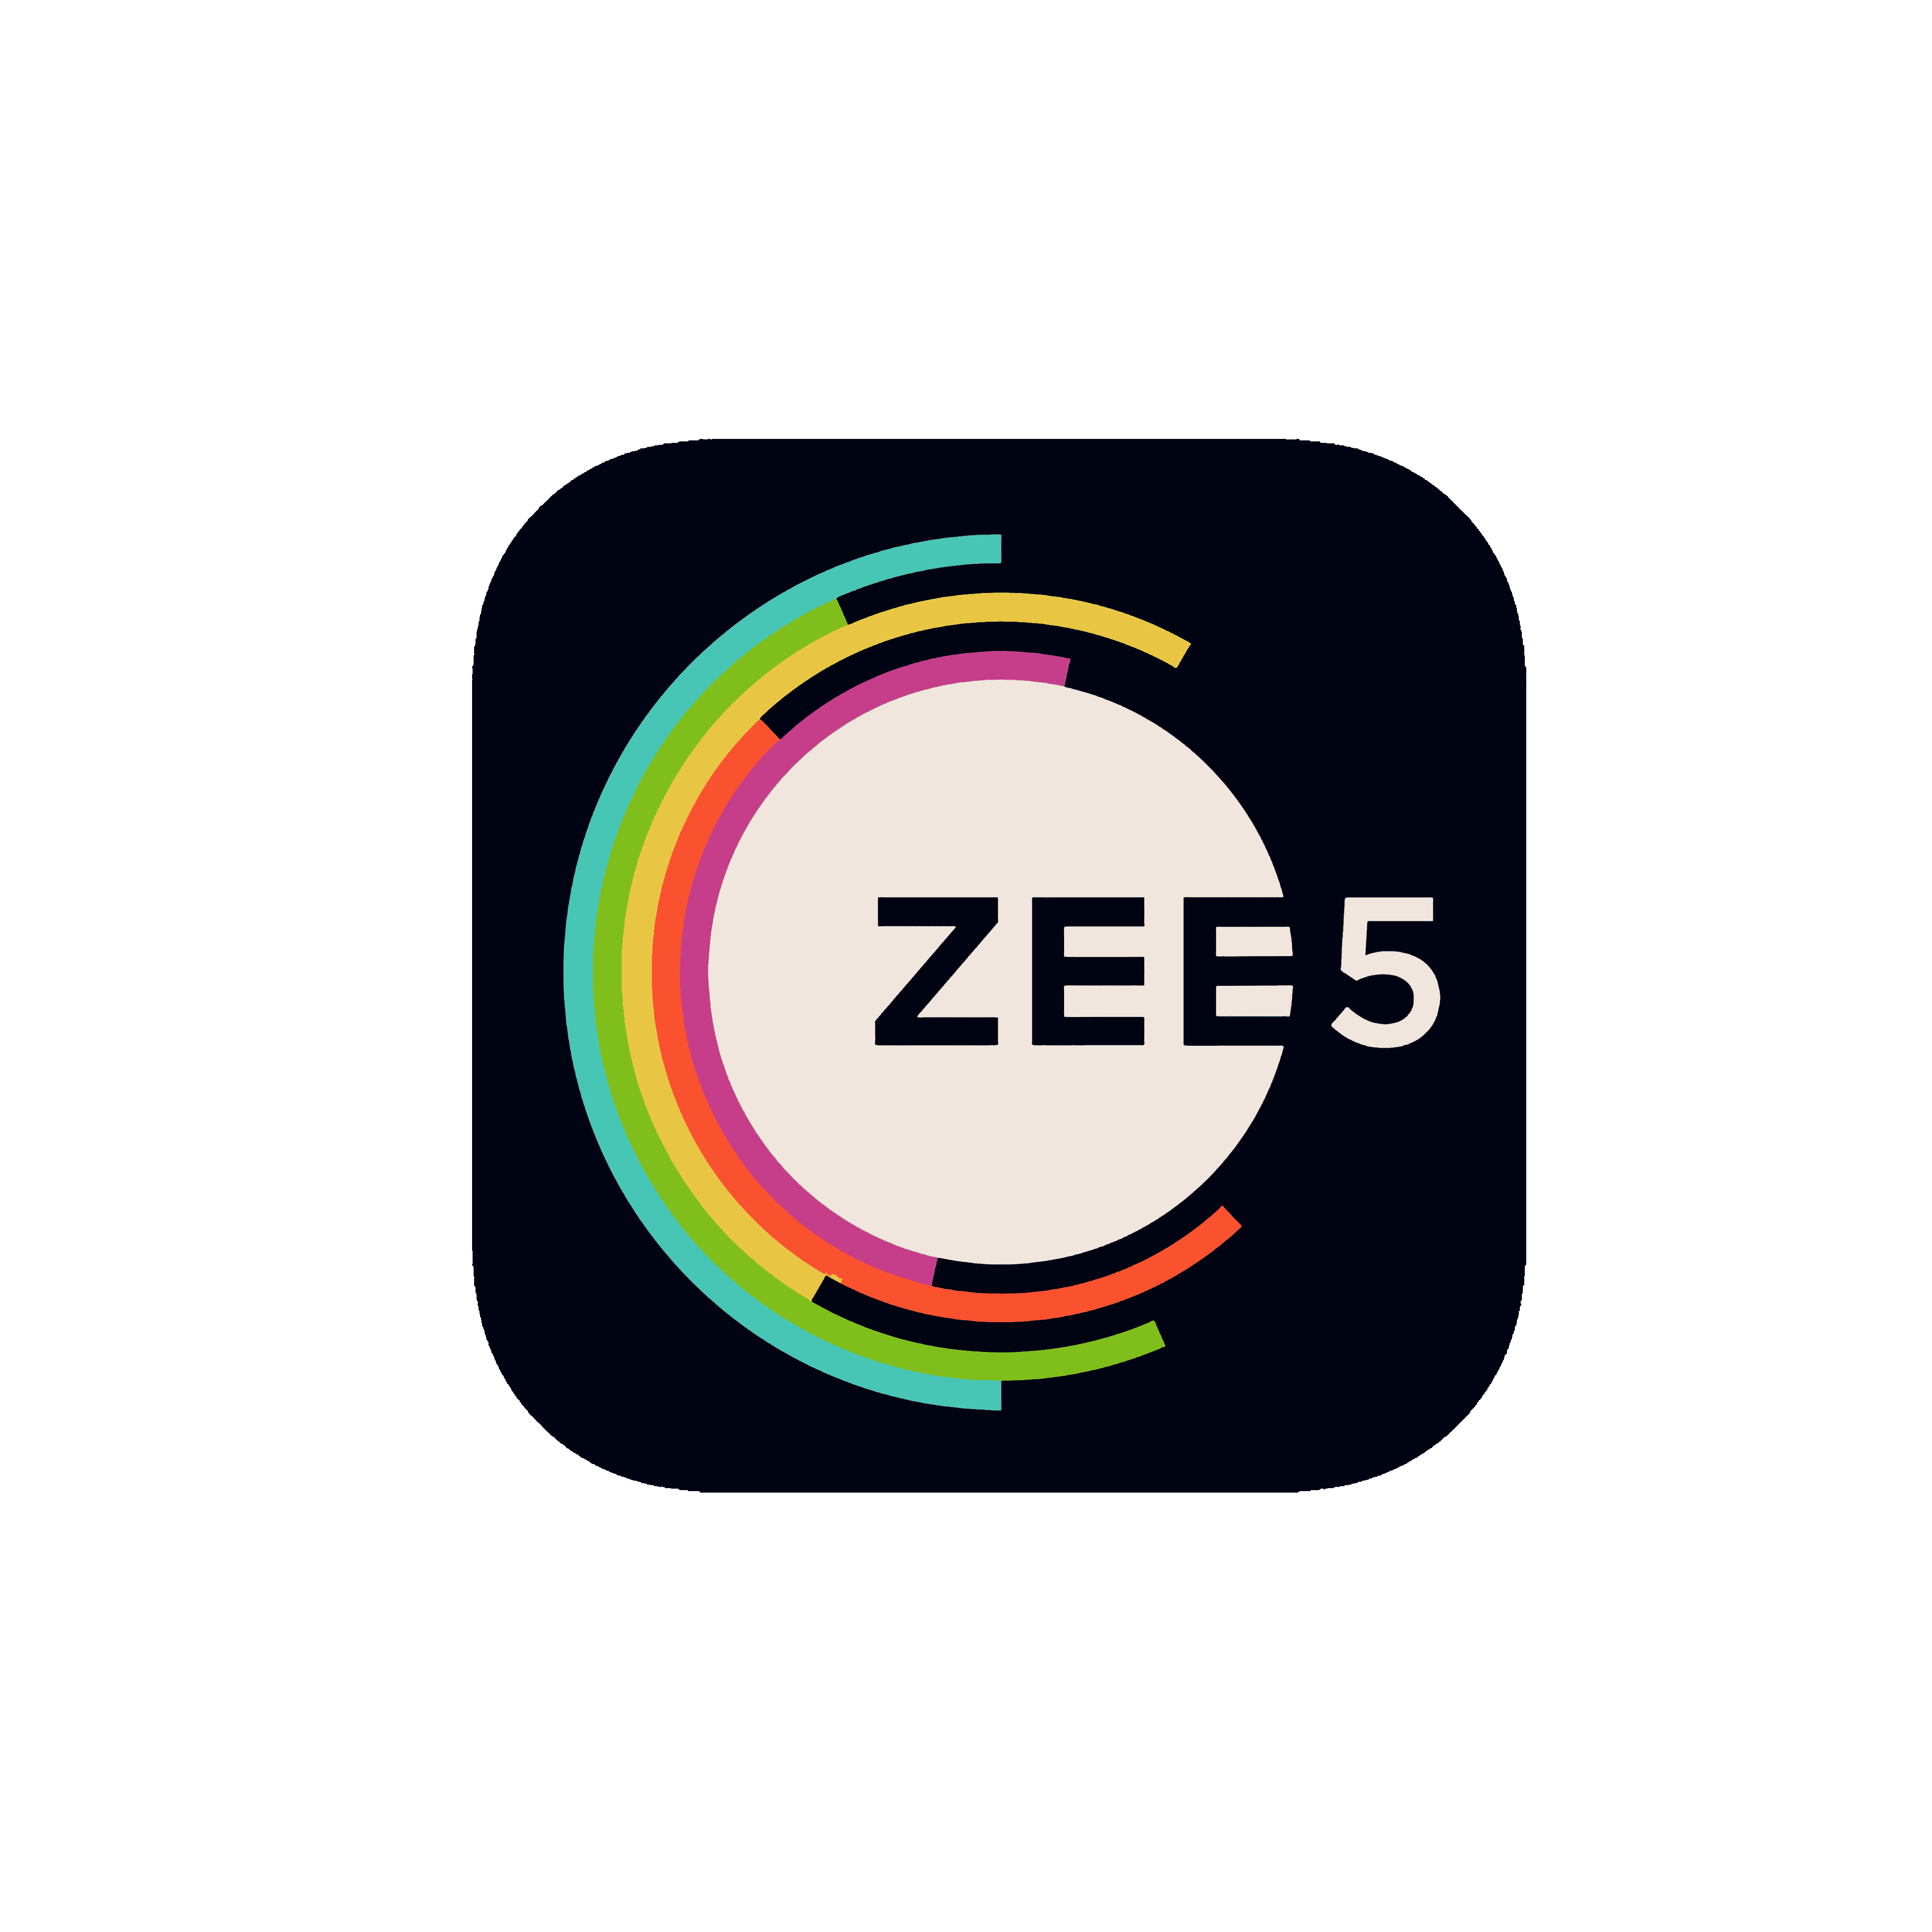 Zee5 Transparent Clipart